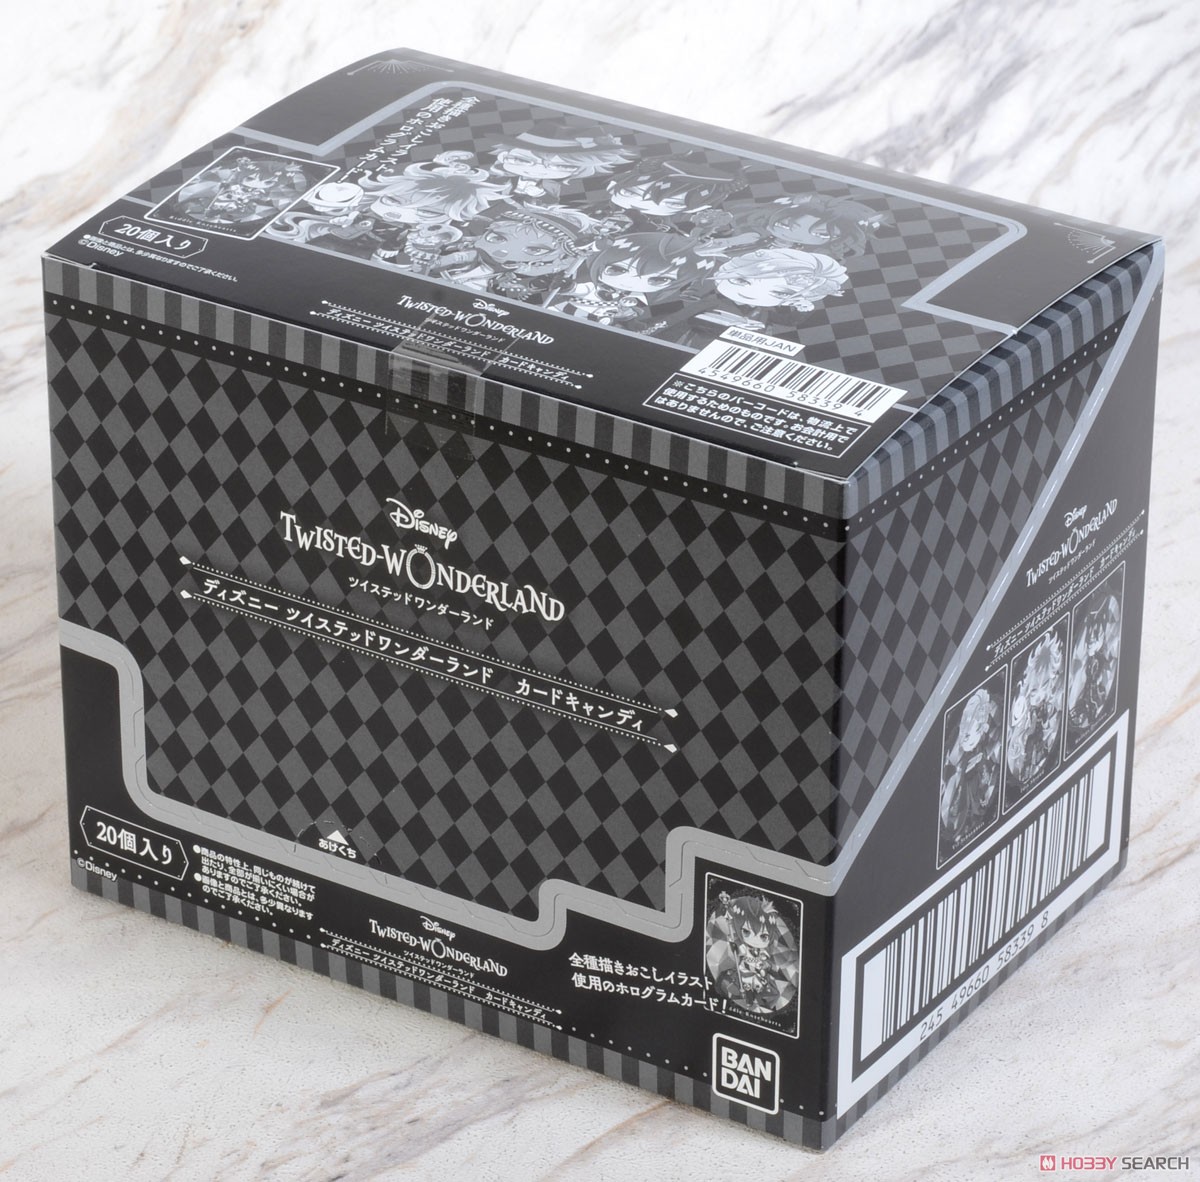 『ディズニー ツイステッドワンダーランド』 カードキャンディ (20個セット) (食玩) パッケージ1